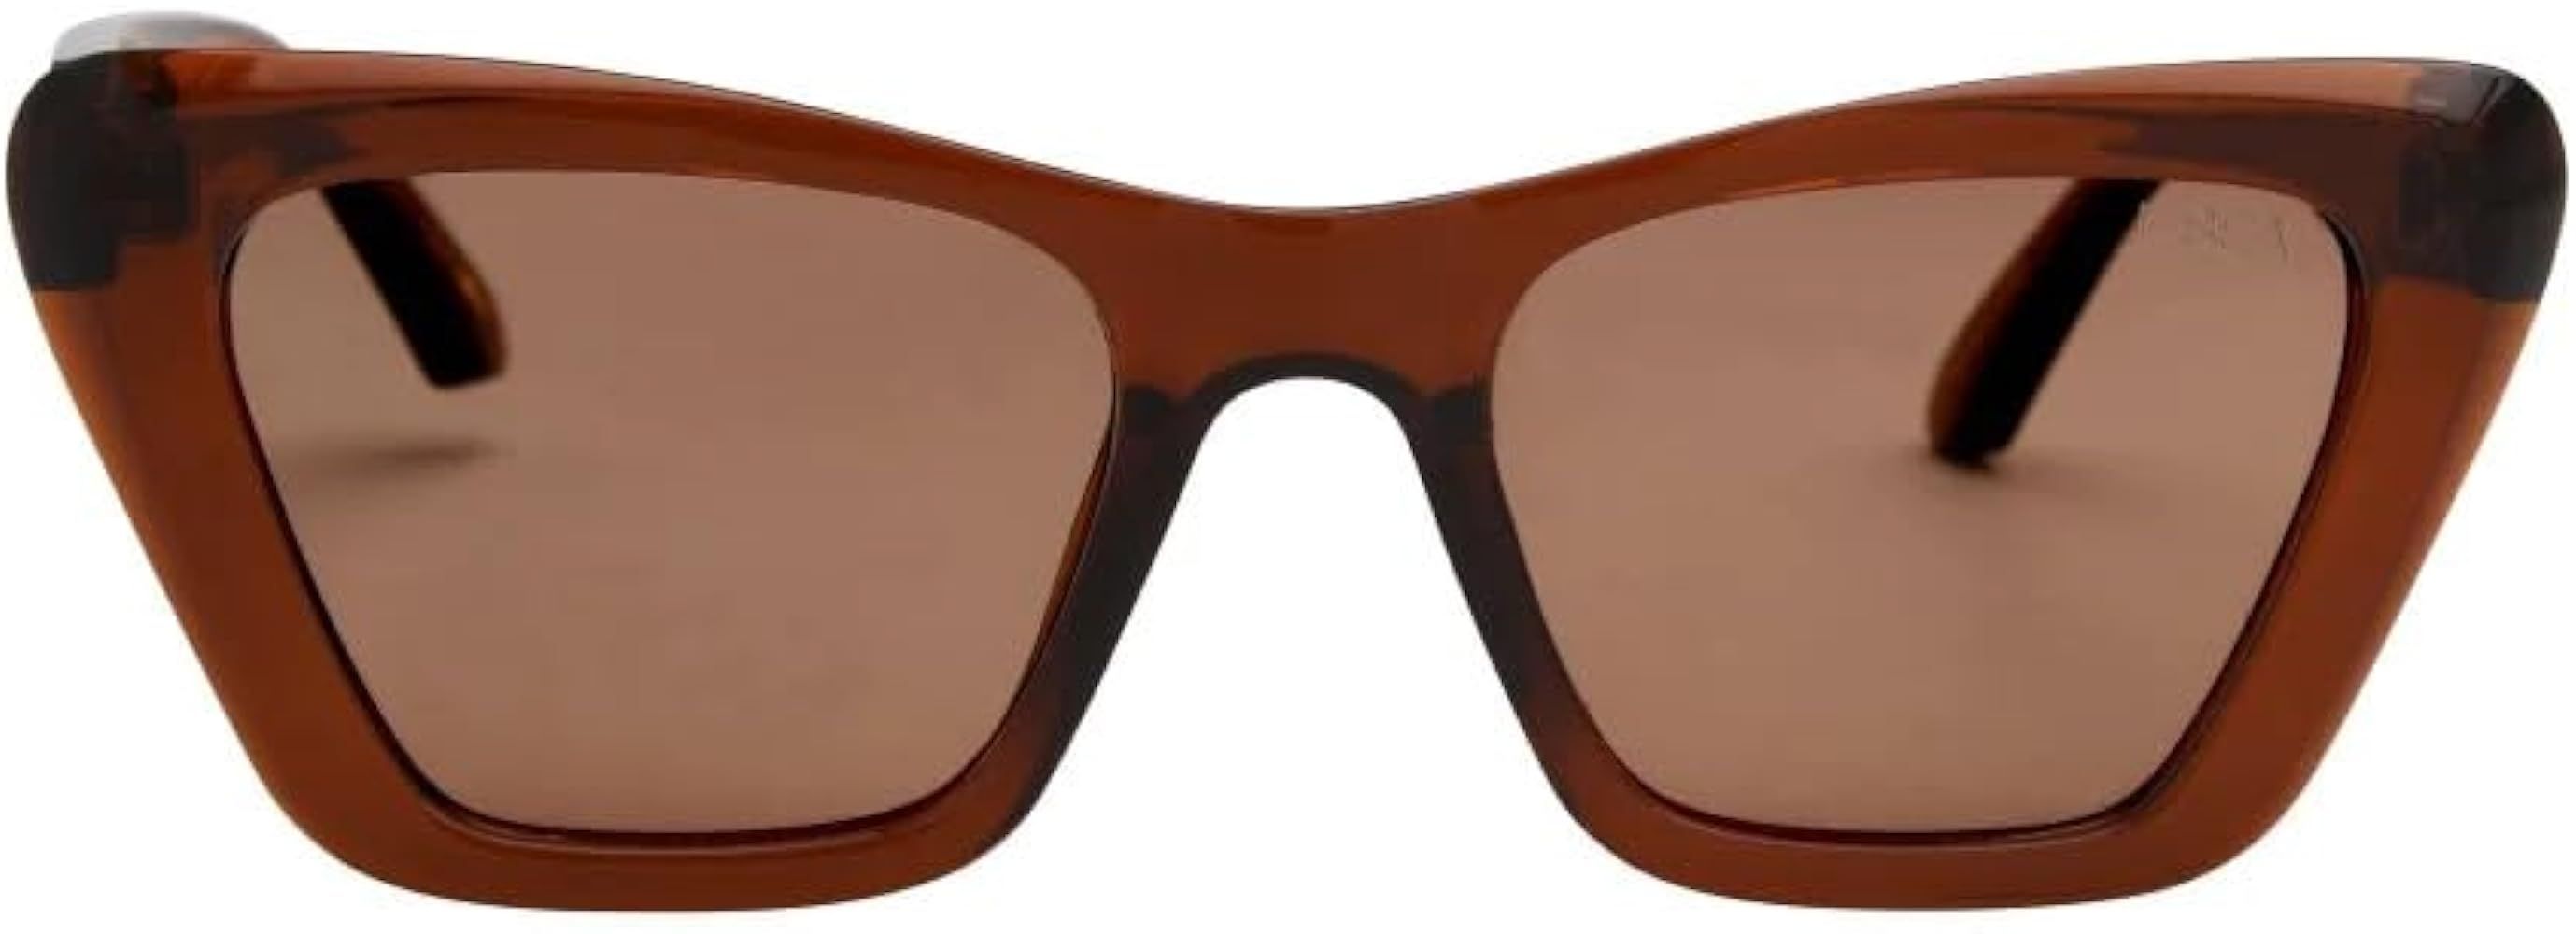 I-SEA Women's Sunglasses - Daisy | Amazon (US)